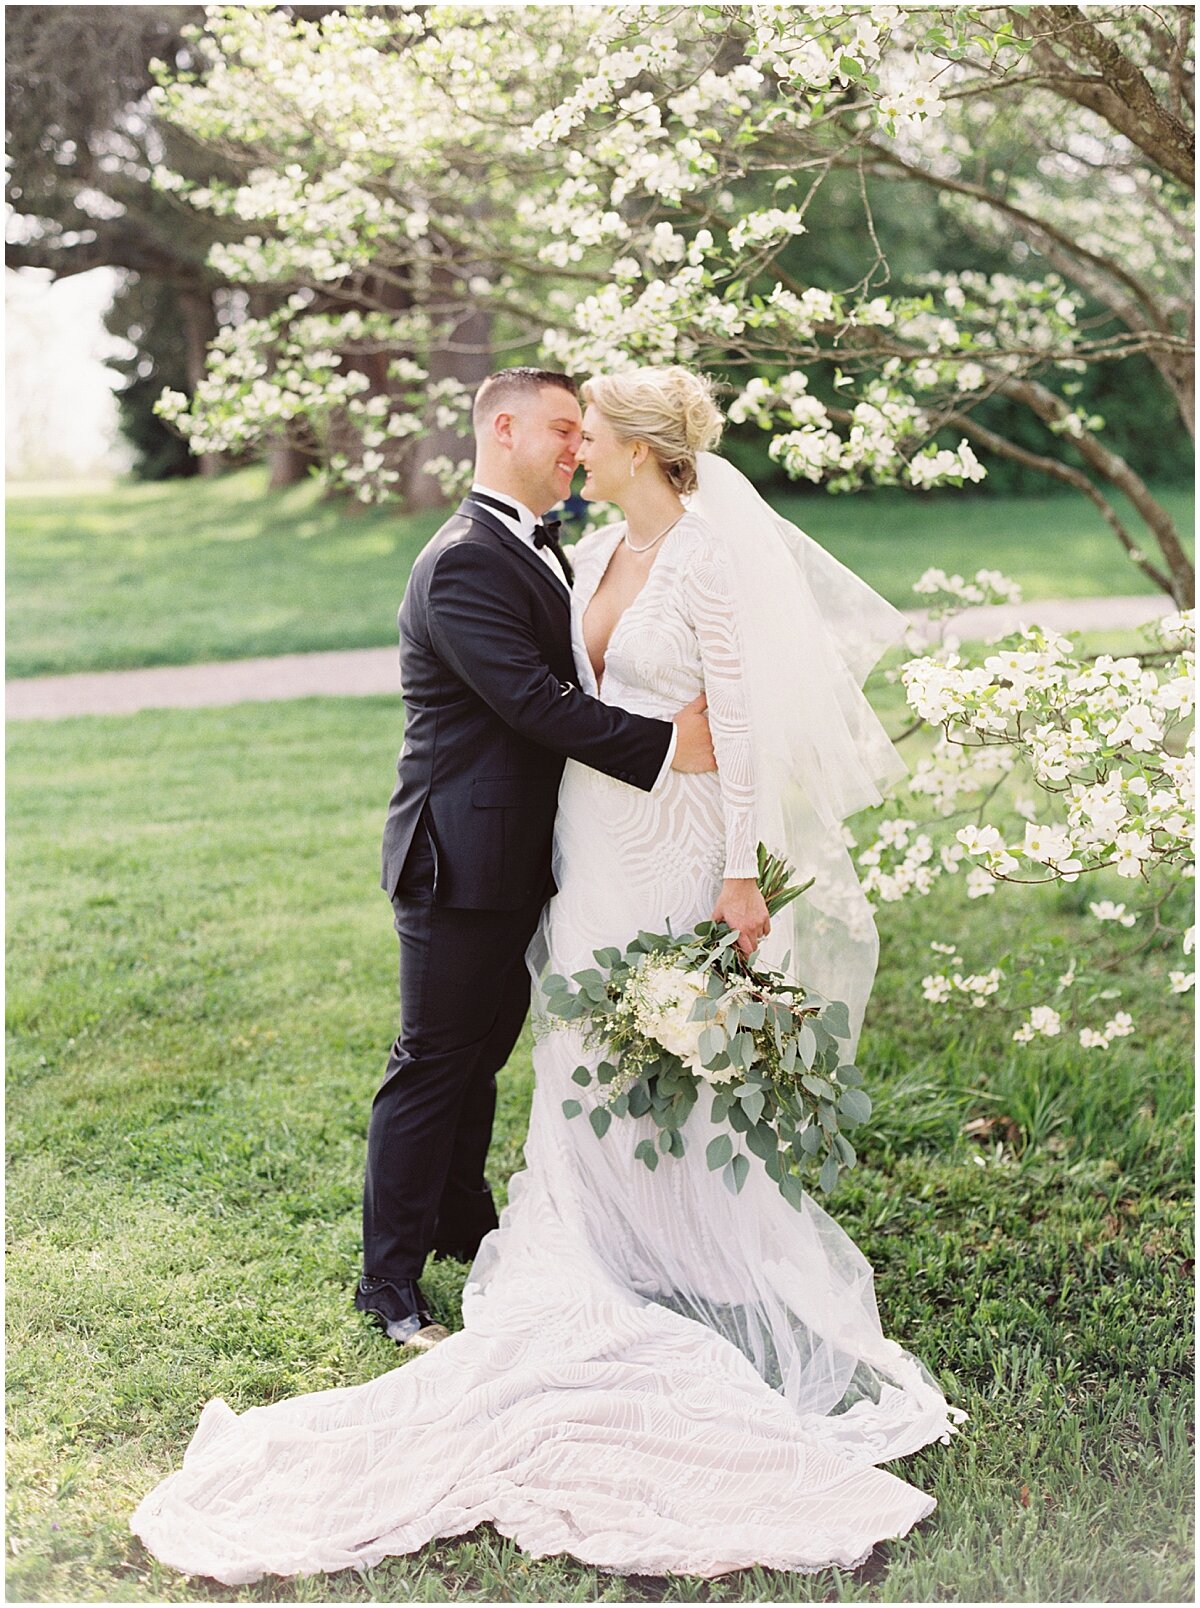 couple on wedding day photos at Knoxville Botanical Garden